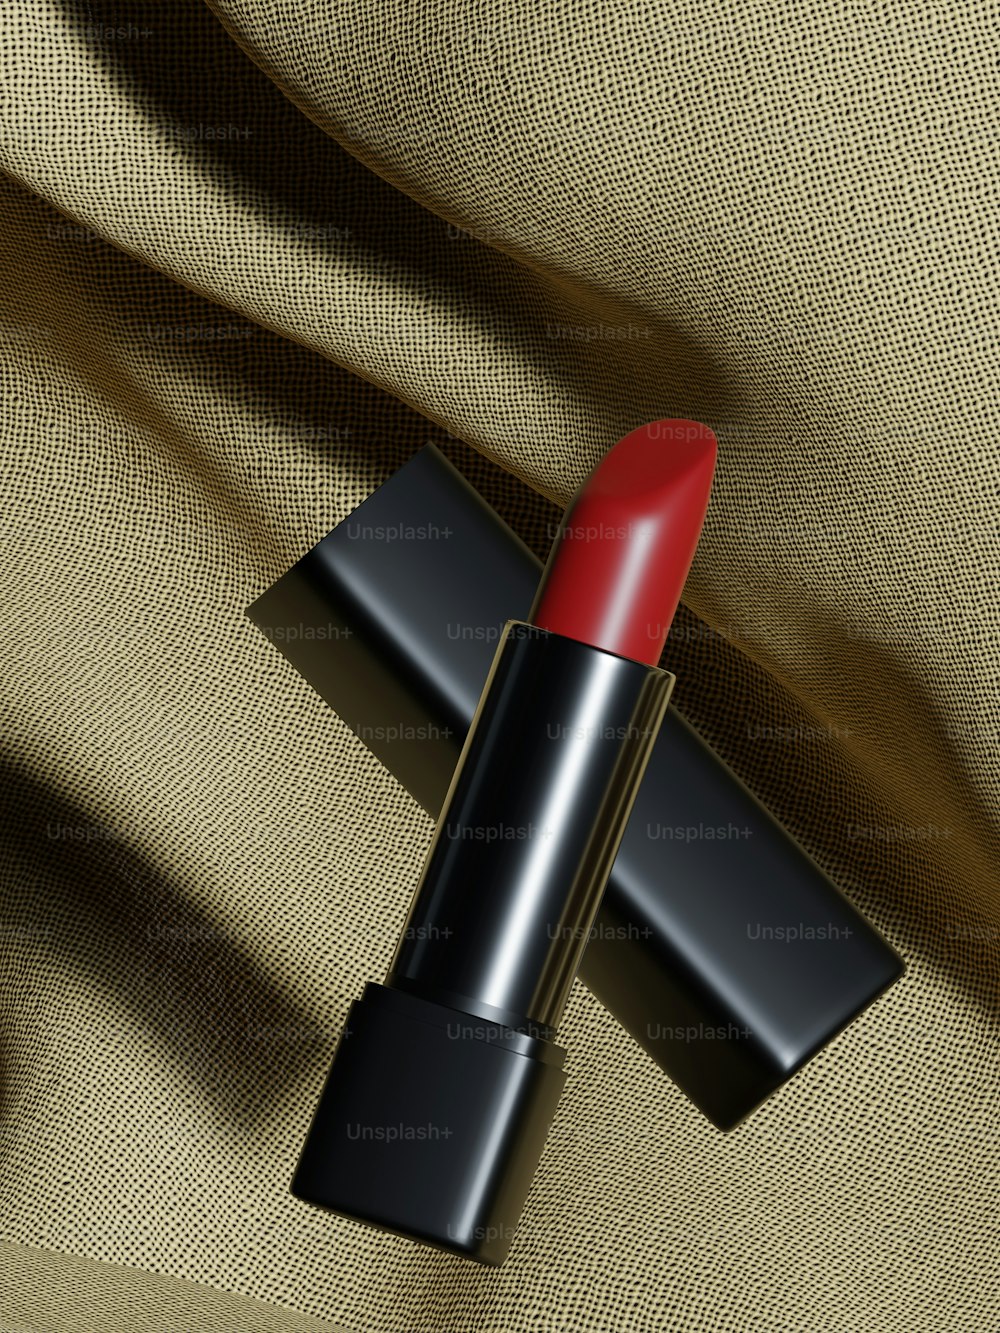 Un lápiz labial rojo sentado encima de una tela beige